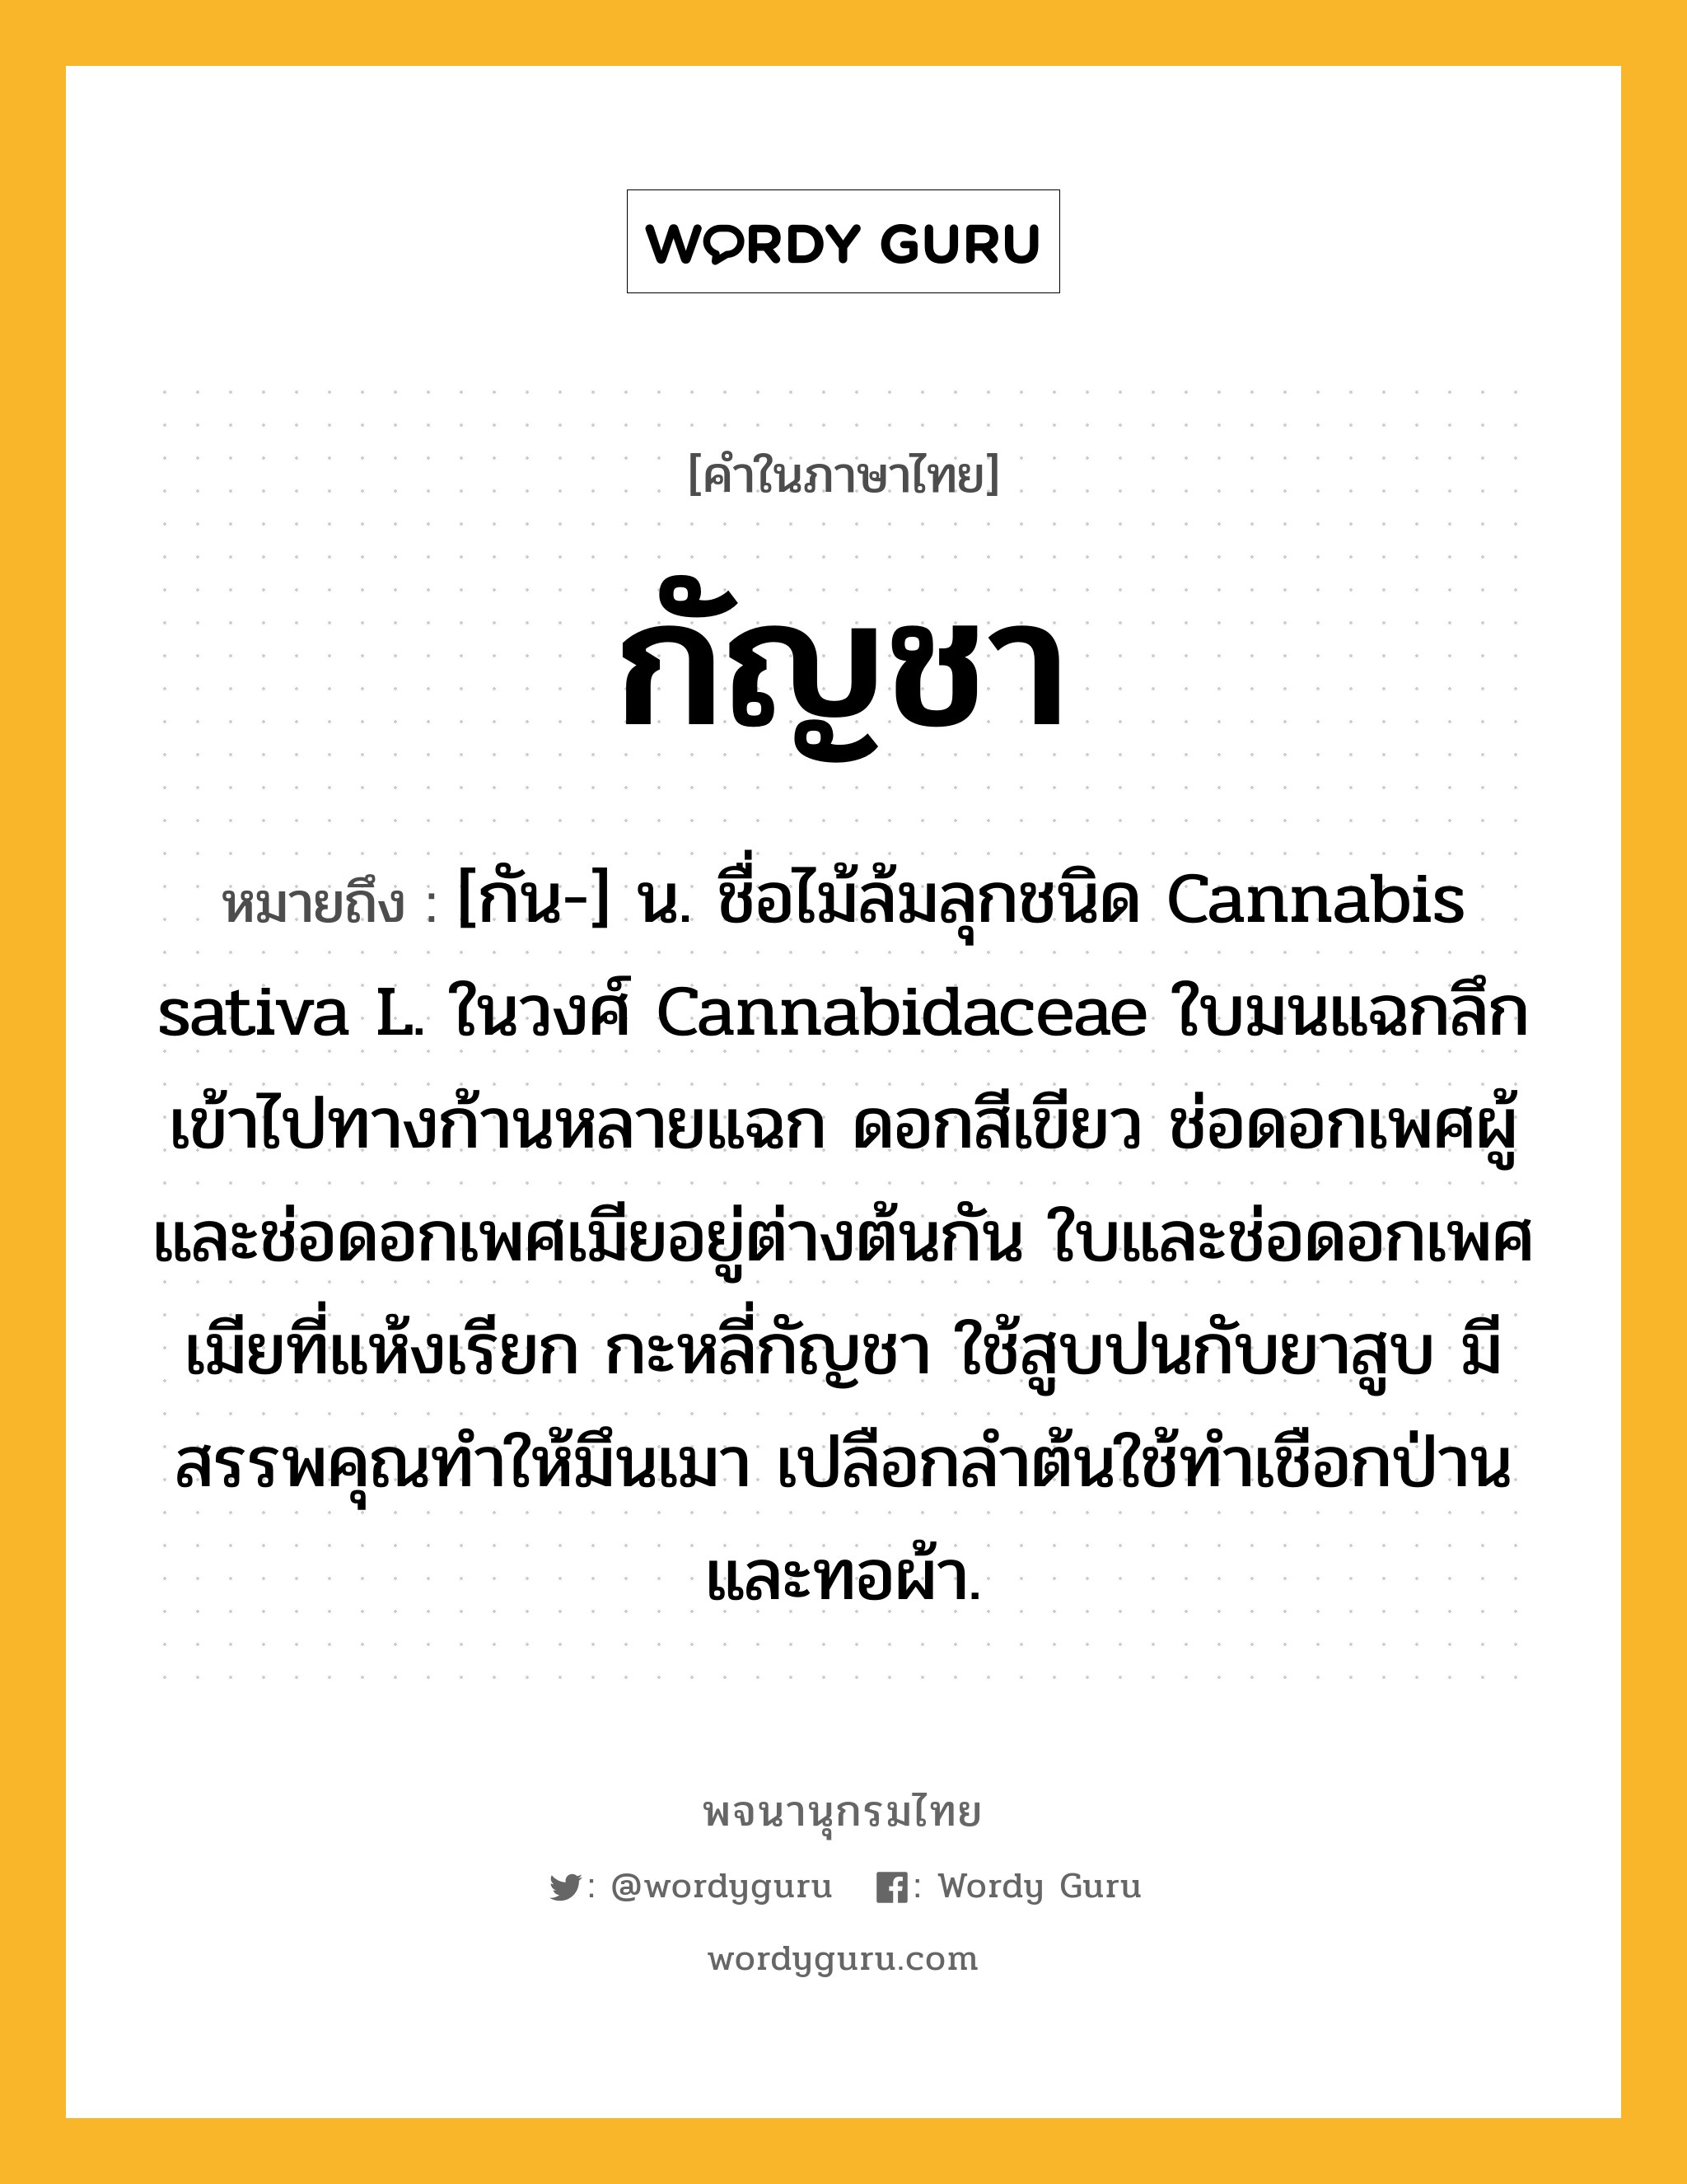 กัญชา ความหมาย หมายถึงอะไร?, คำในภาษาไทย กัญชา หมายถึง [กัน-] น. ชื่อไม้ล้มลุกชนิด Cannabis sativa L. ในวงศ์ Cannabidaceae ใบมนแฉกลึกเข้าไปทางก้านหลายแฉก ดอกสีเขียว ช่อดอกเพศผู้และช่อดอกเพศเมียอยู่ต่างต้นกัน ใบและช่อดอกเพศเมียที่แห้งเรียก กะหลี่กัญชา ใช้สูบปนกับยาสูบ มีสรรพคุณทําให้มึนเมา เปลือกลําต้นใช้ทําเชือกป่าน และทอผ้า.